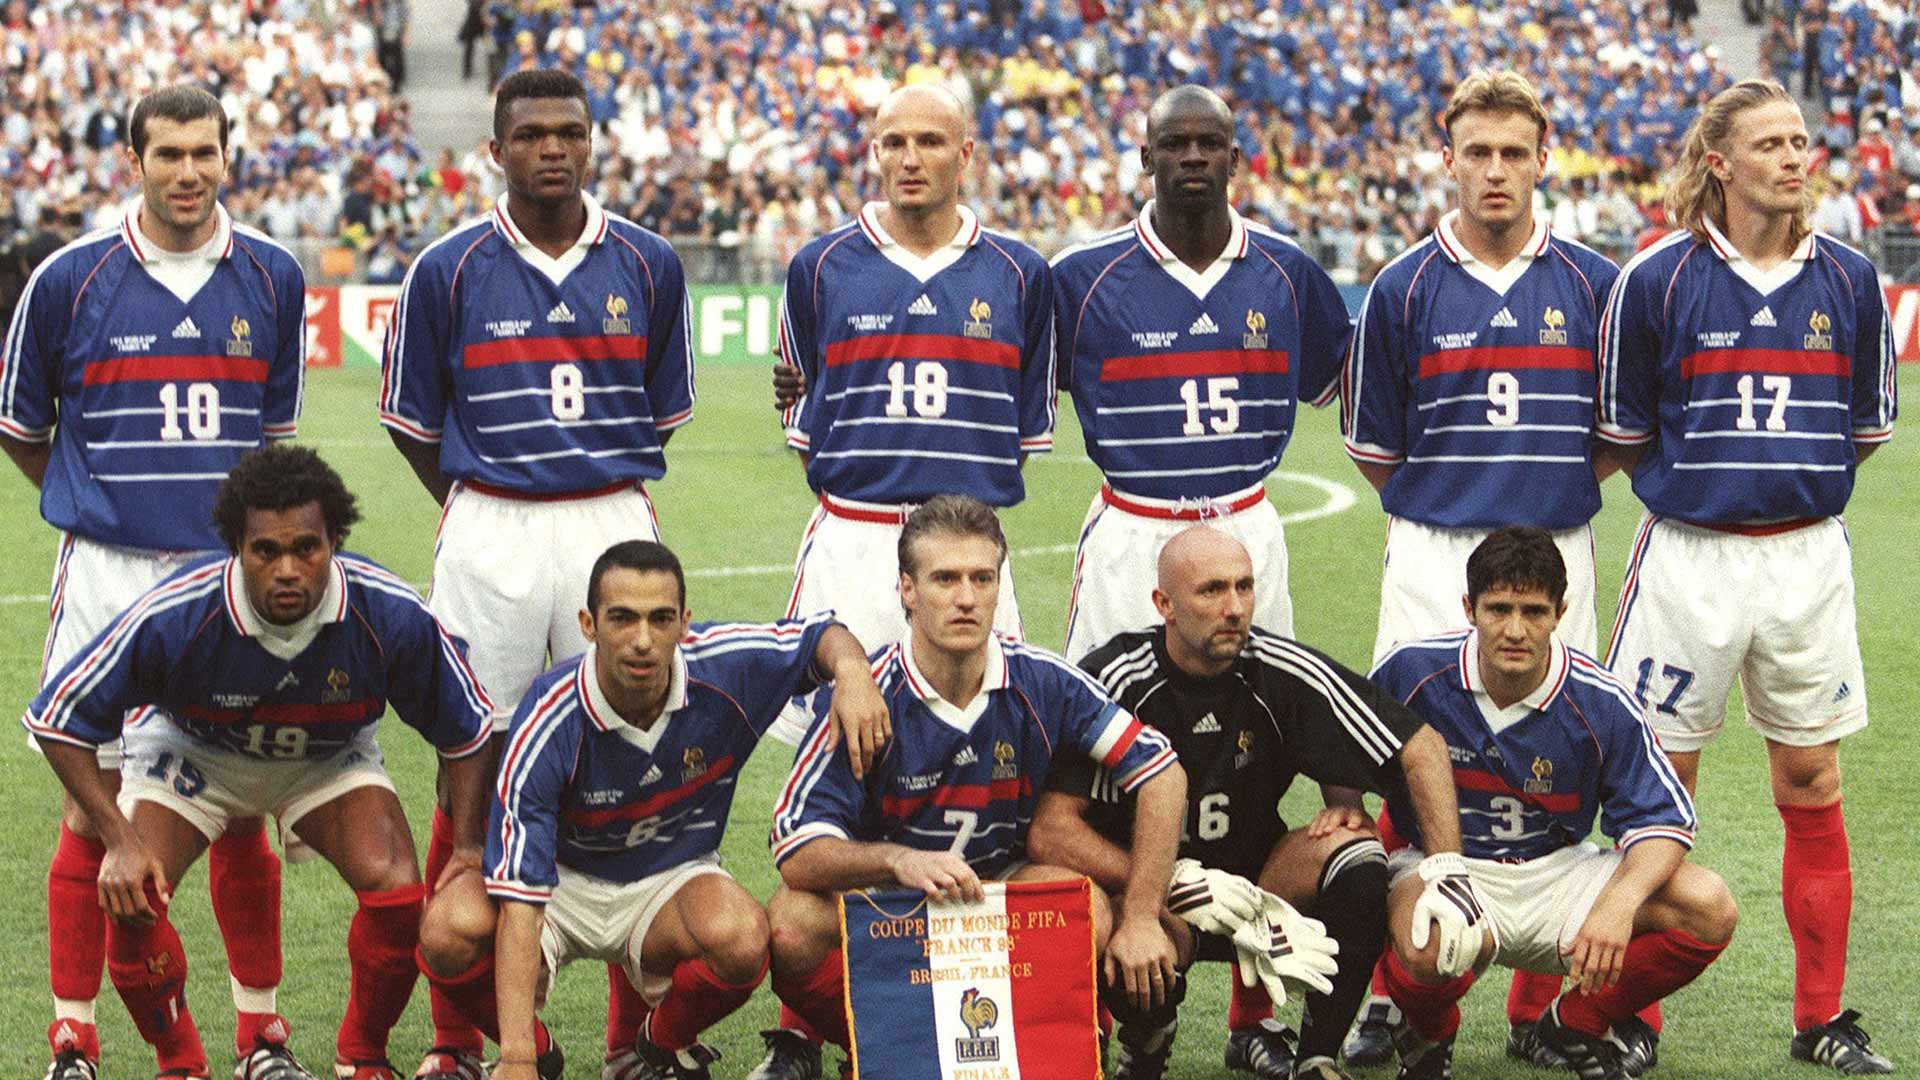 2年保証 1998ユニフォーム決勝戦仕様 フランス代表gkバルテズ選手ワールドカップ ウェア Revuemusicaleoicrm Org